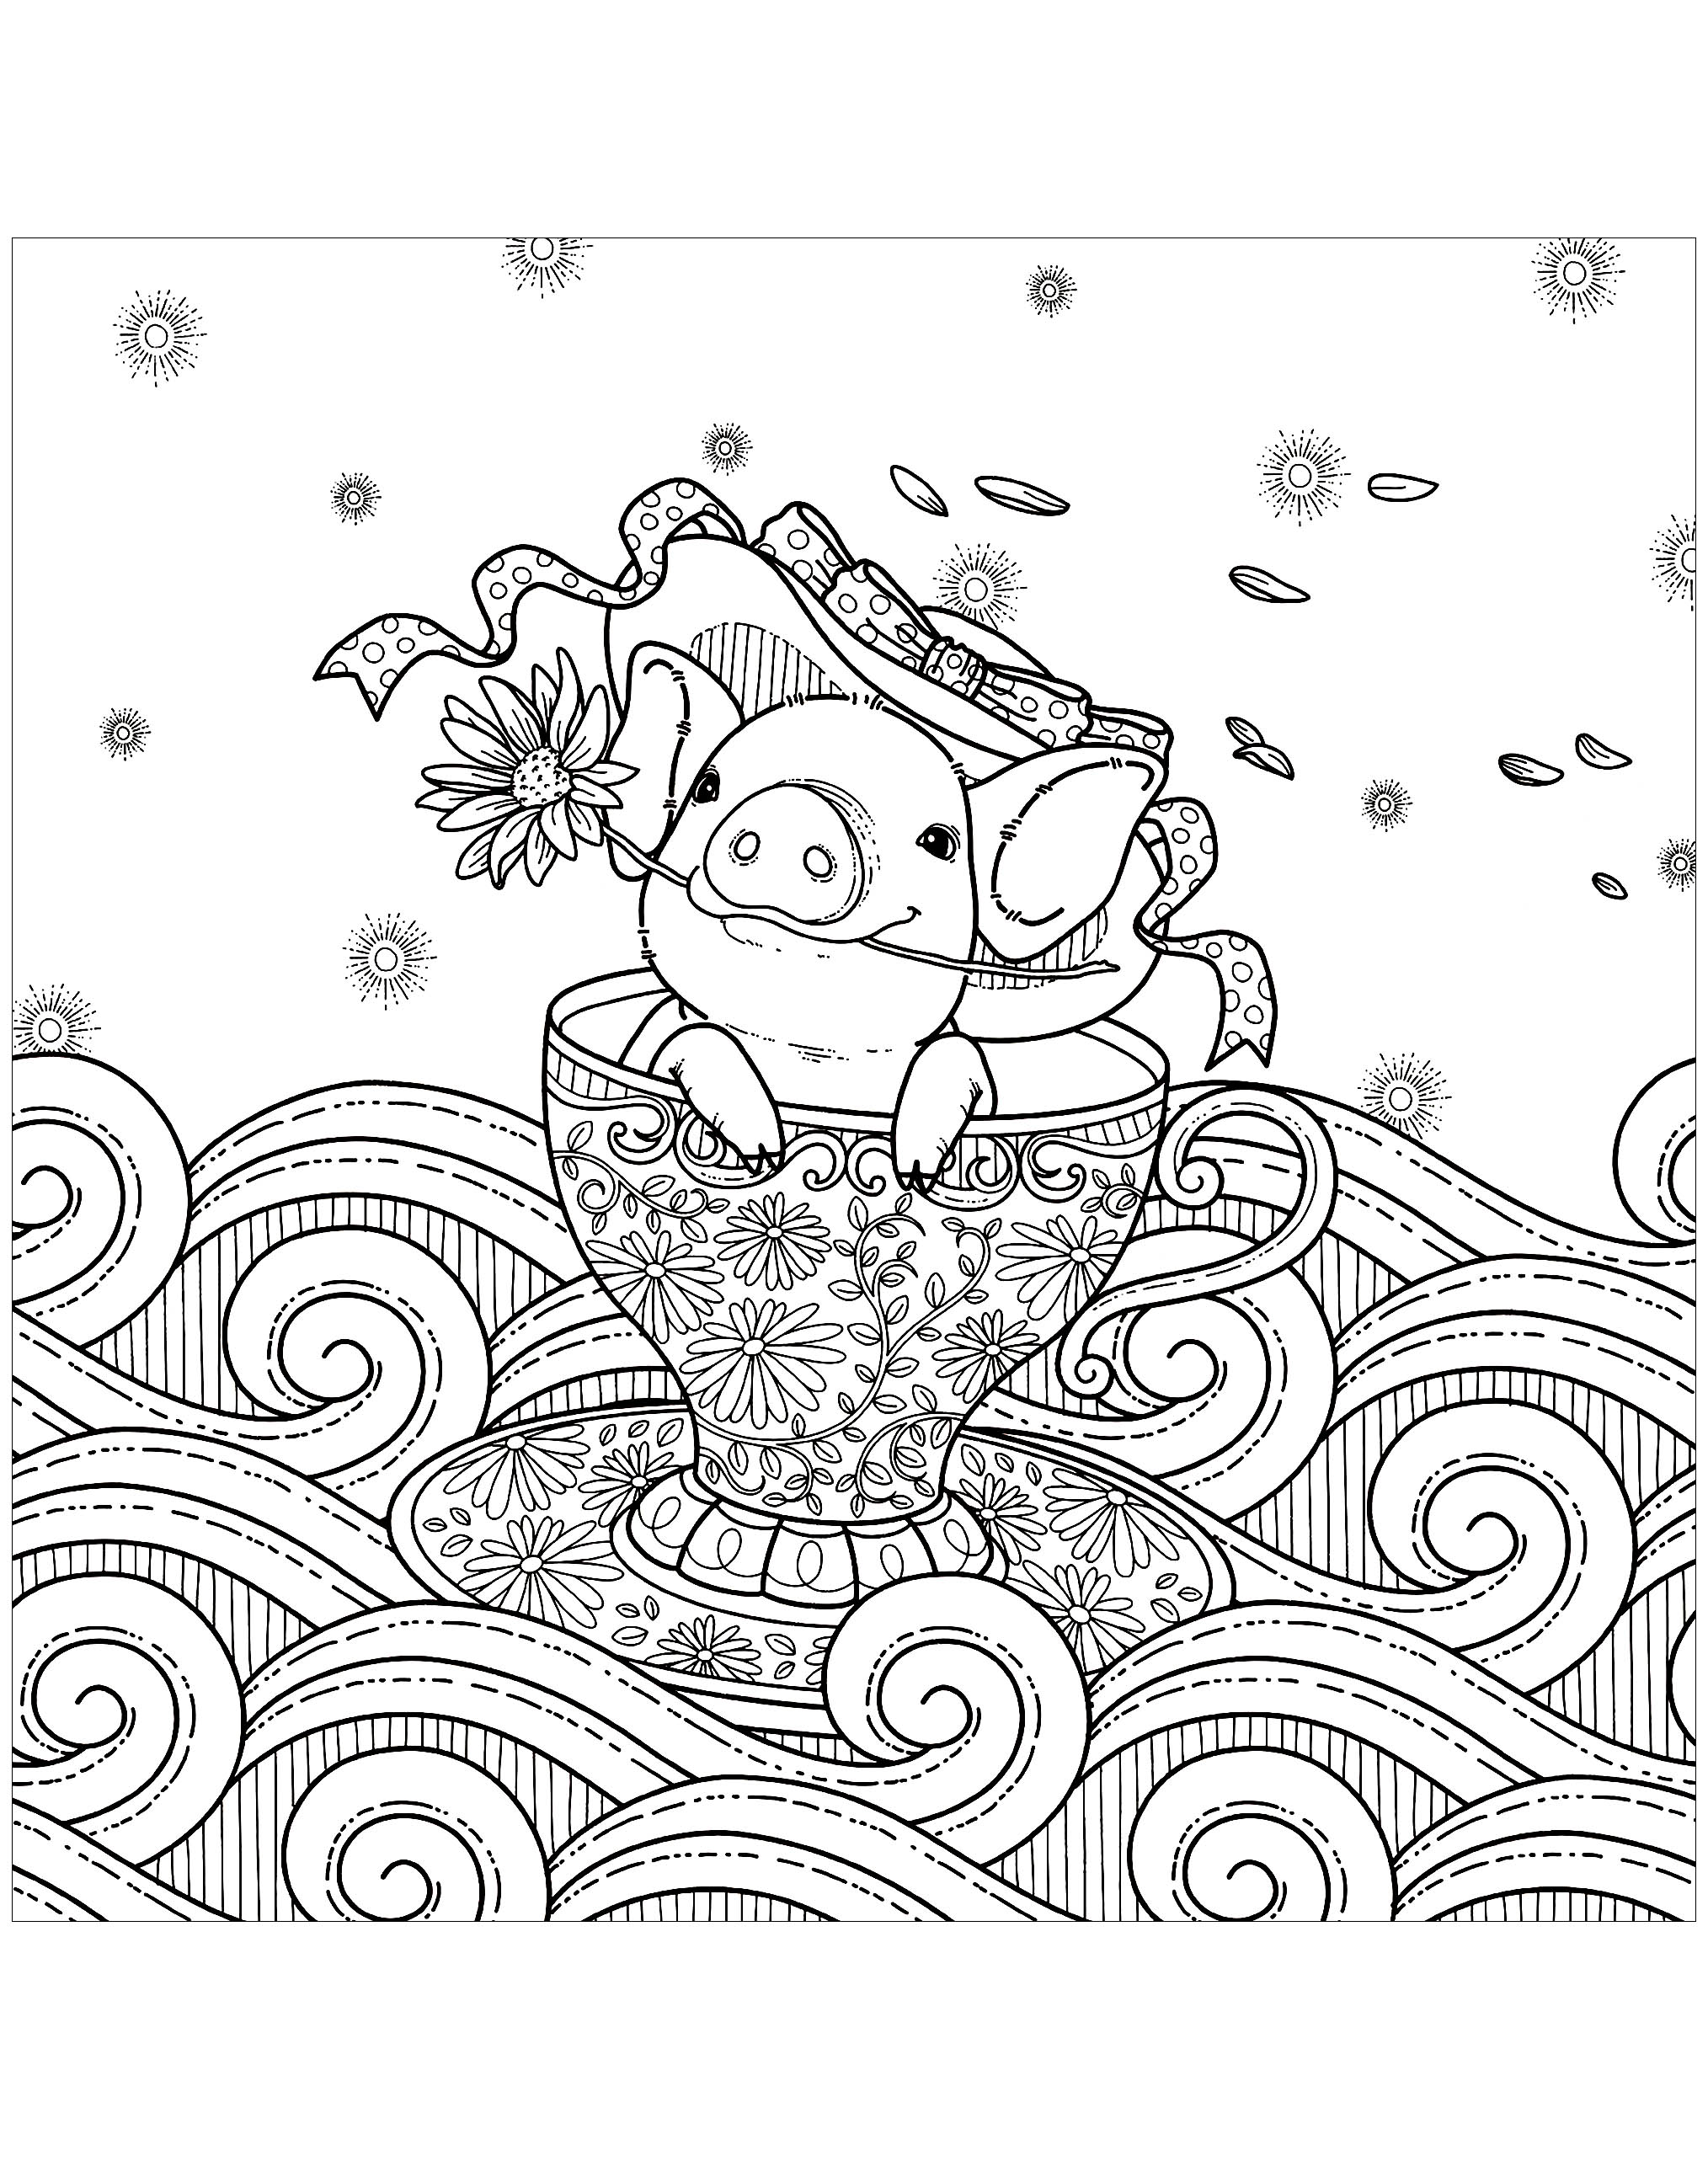 Desenhos grátis para colorir de Porcos para imprimir e colorir, Artista : Kchung   Fonte : 123rf